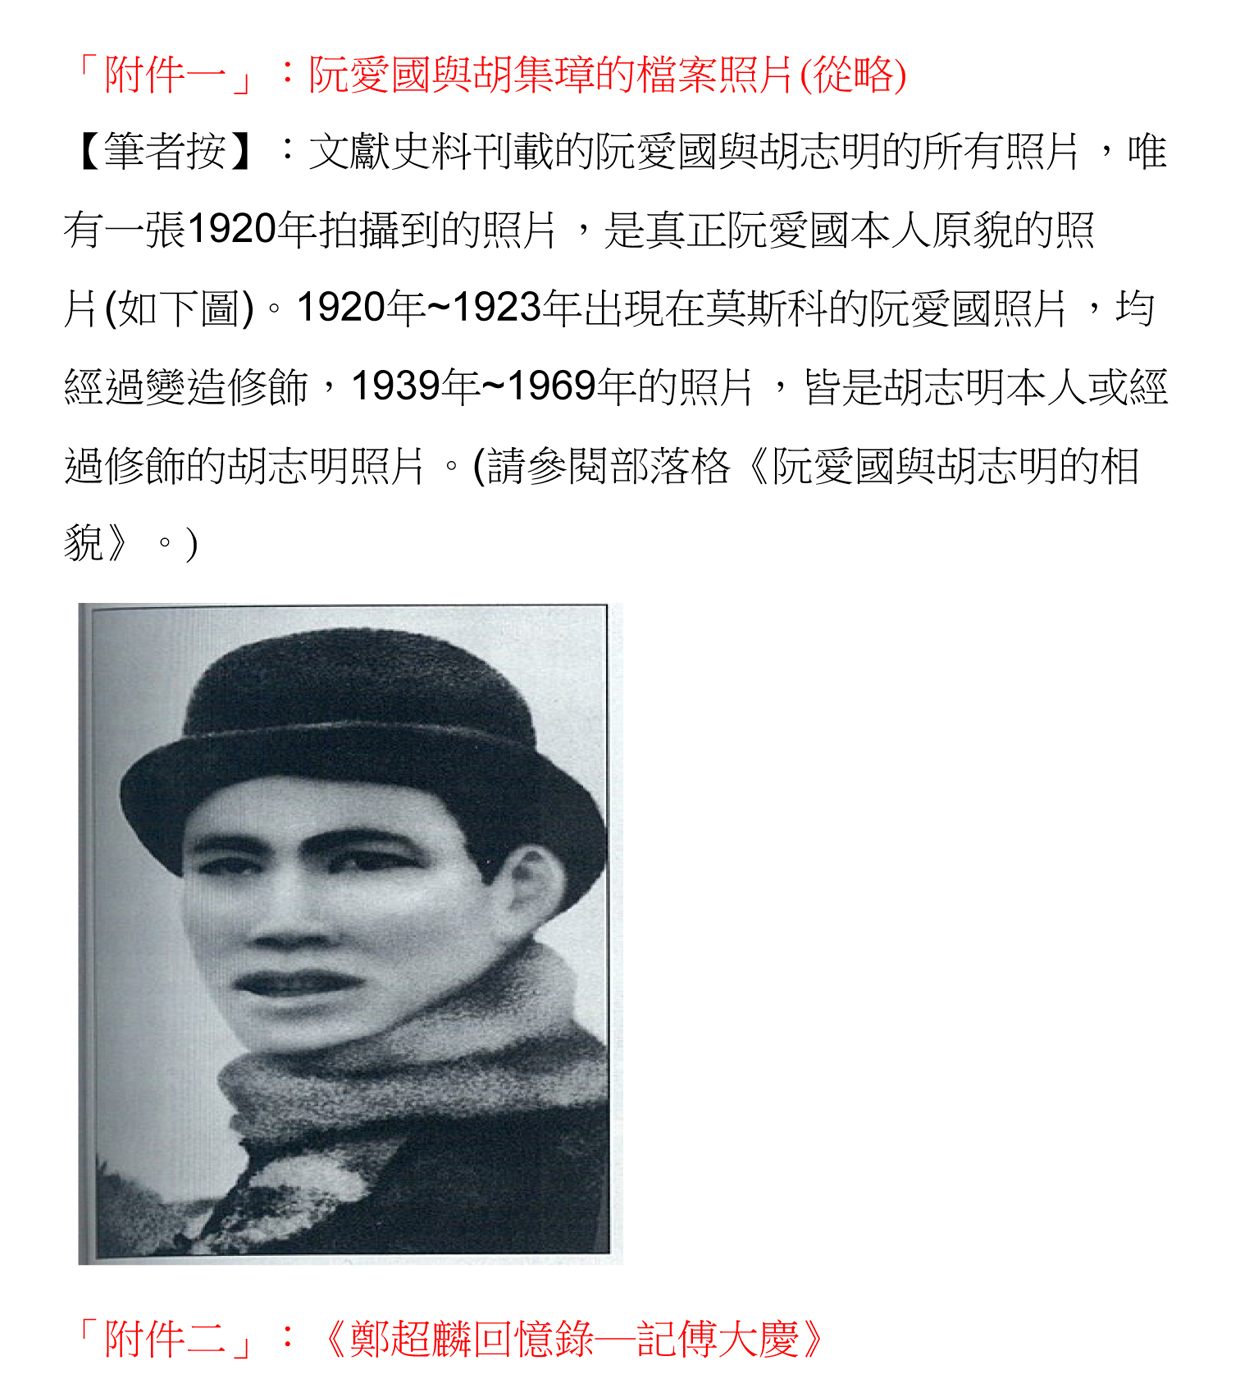 Hình 9 - Hồ Tuấn Hùng cho rằng tấm ảnh (mang số (1) trong 'Hồ Chí Minh sinh bình khảo') ở trang chữ Tàu ở trên là ảnh thật duy nhất.jpg